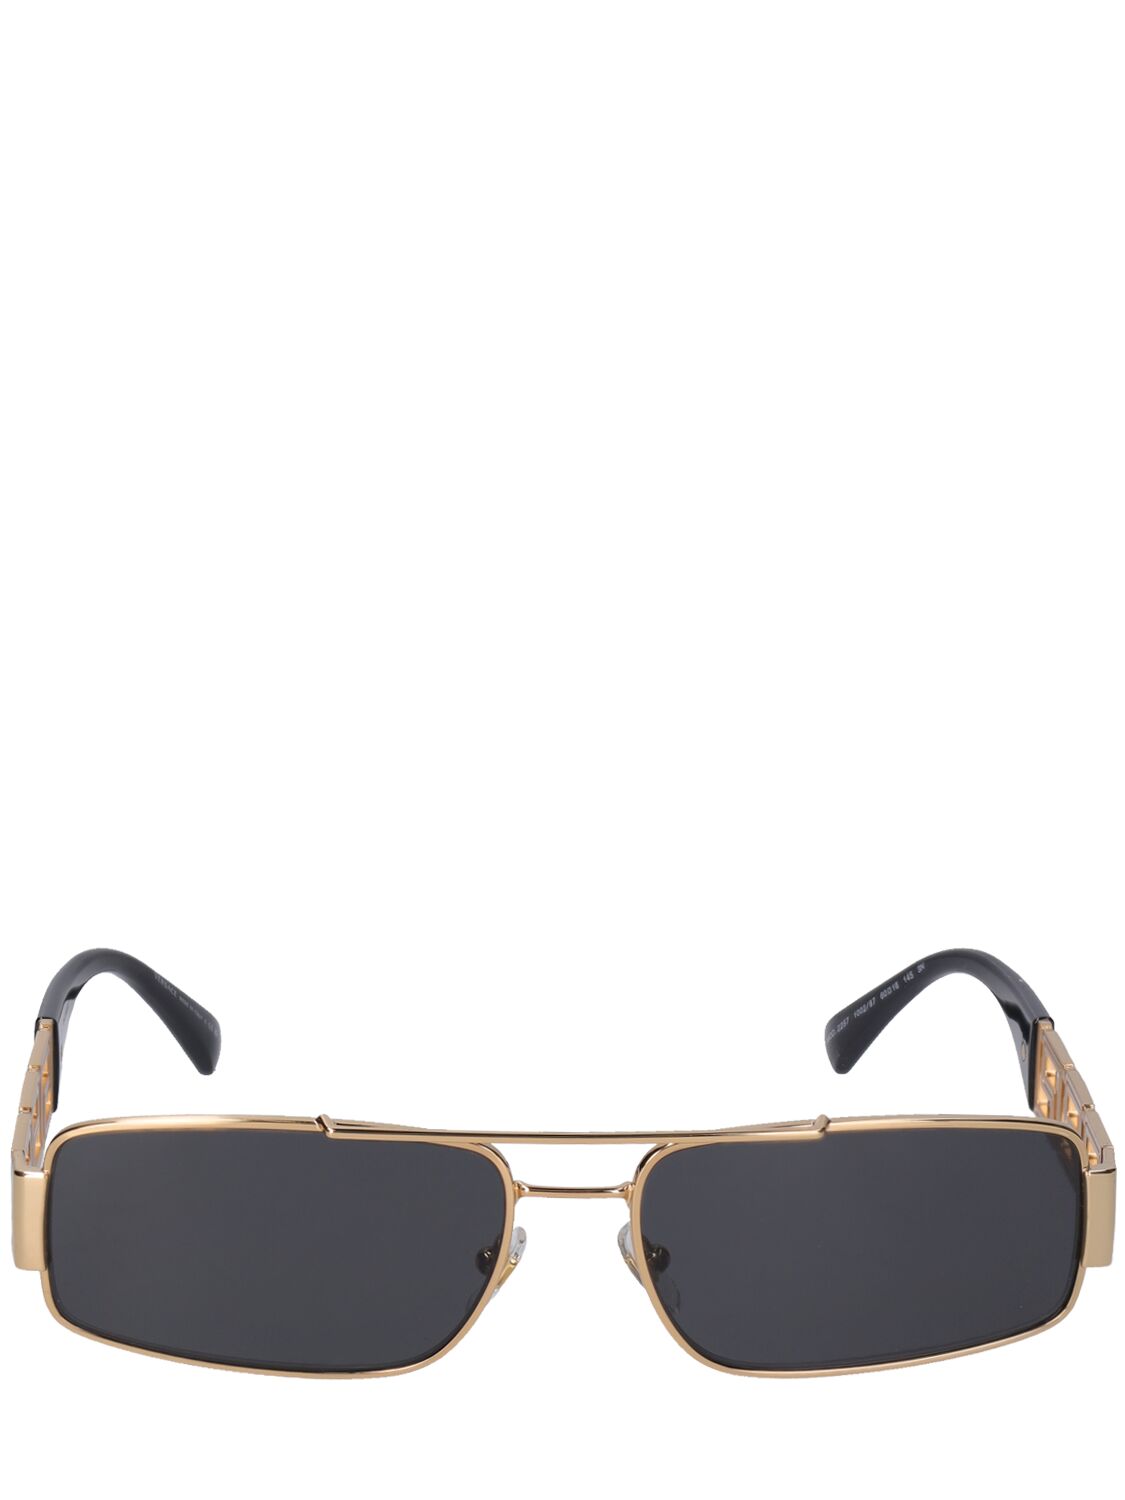 Greek Motif Squared Metal Sunglasses